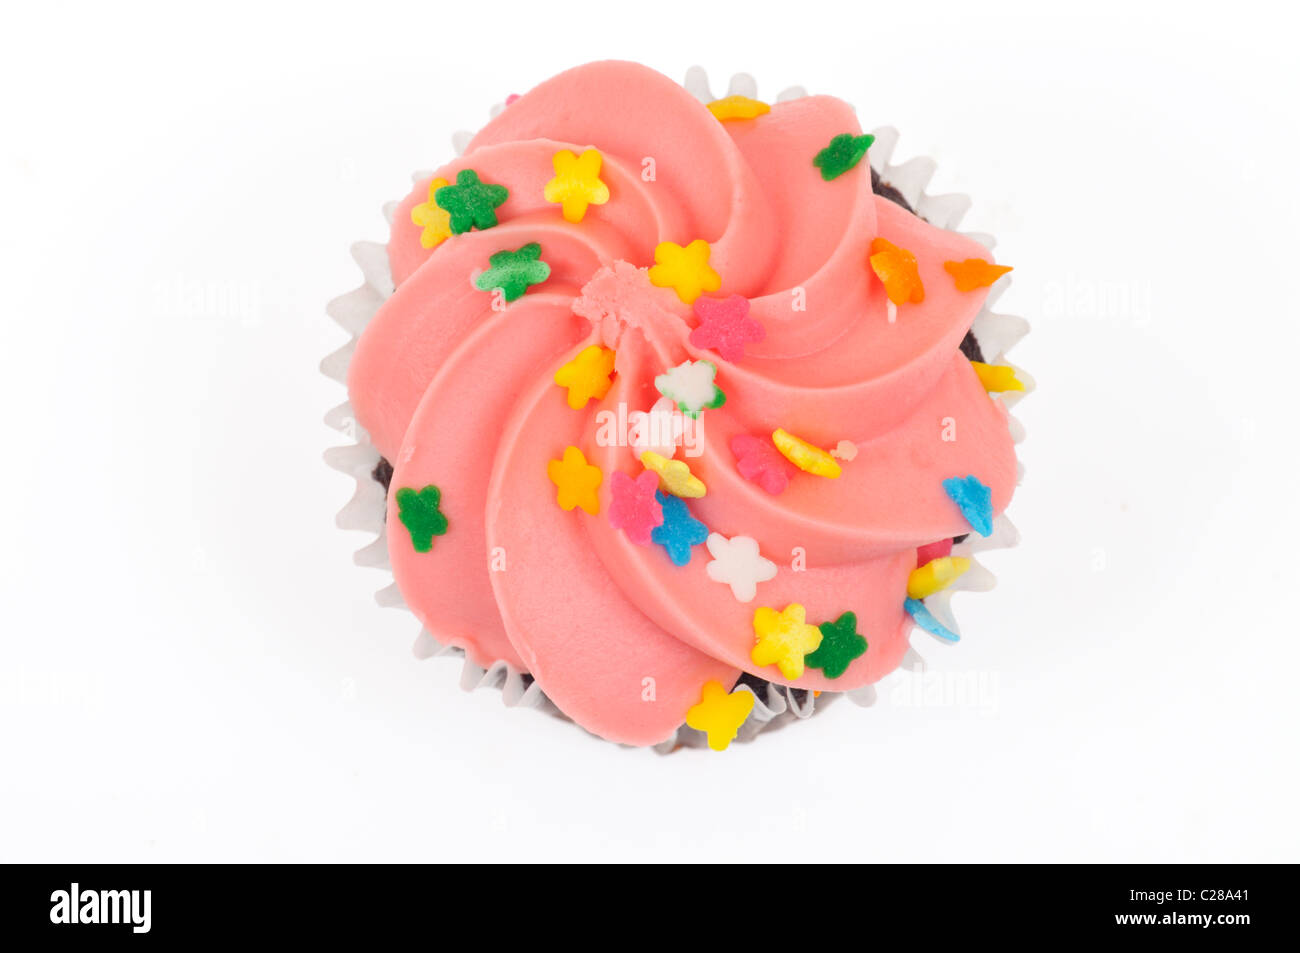 Schokolade Cupcake mit rosa Zuckerguss verziert mit Streuseln von oben auf weißem Hintergrund ausschneiden. Stockfoto